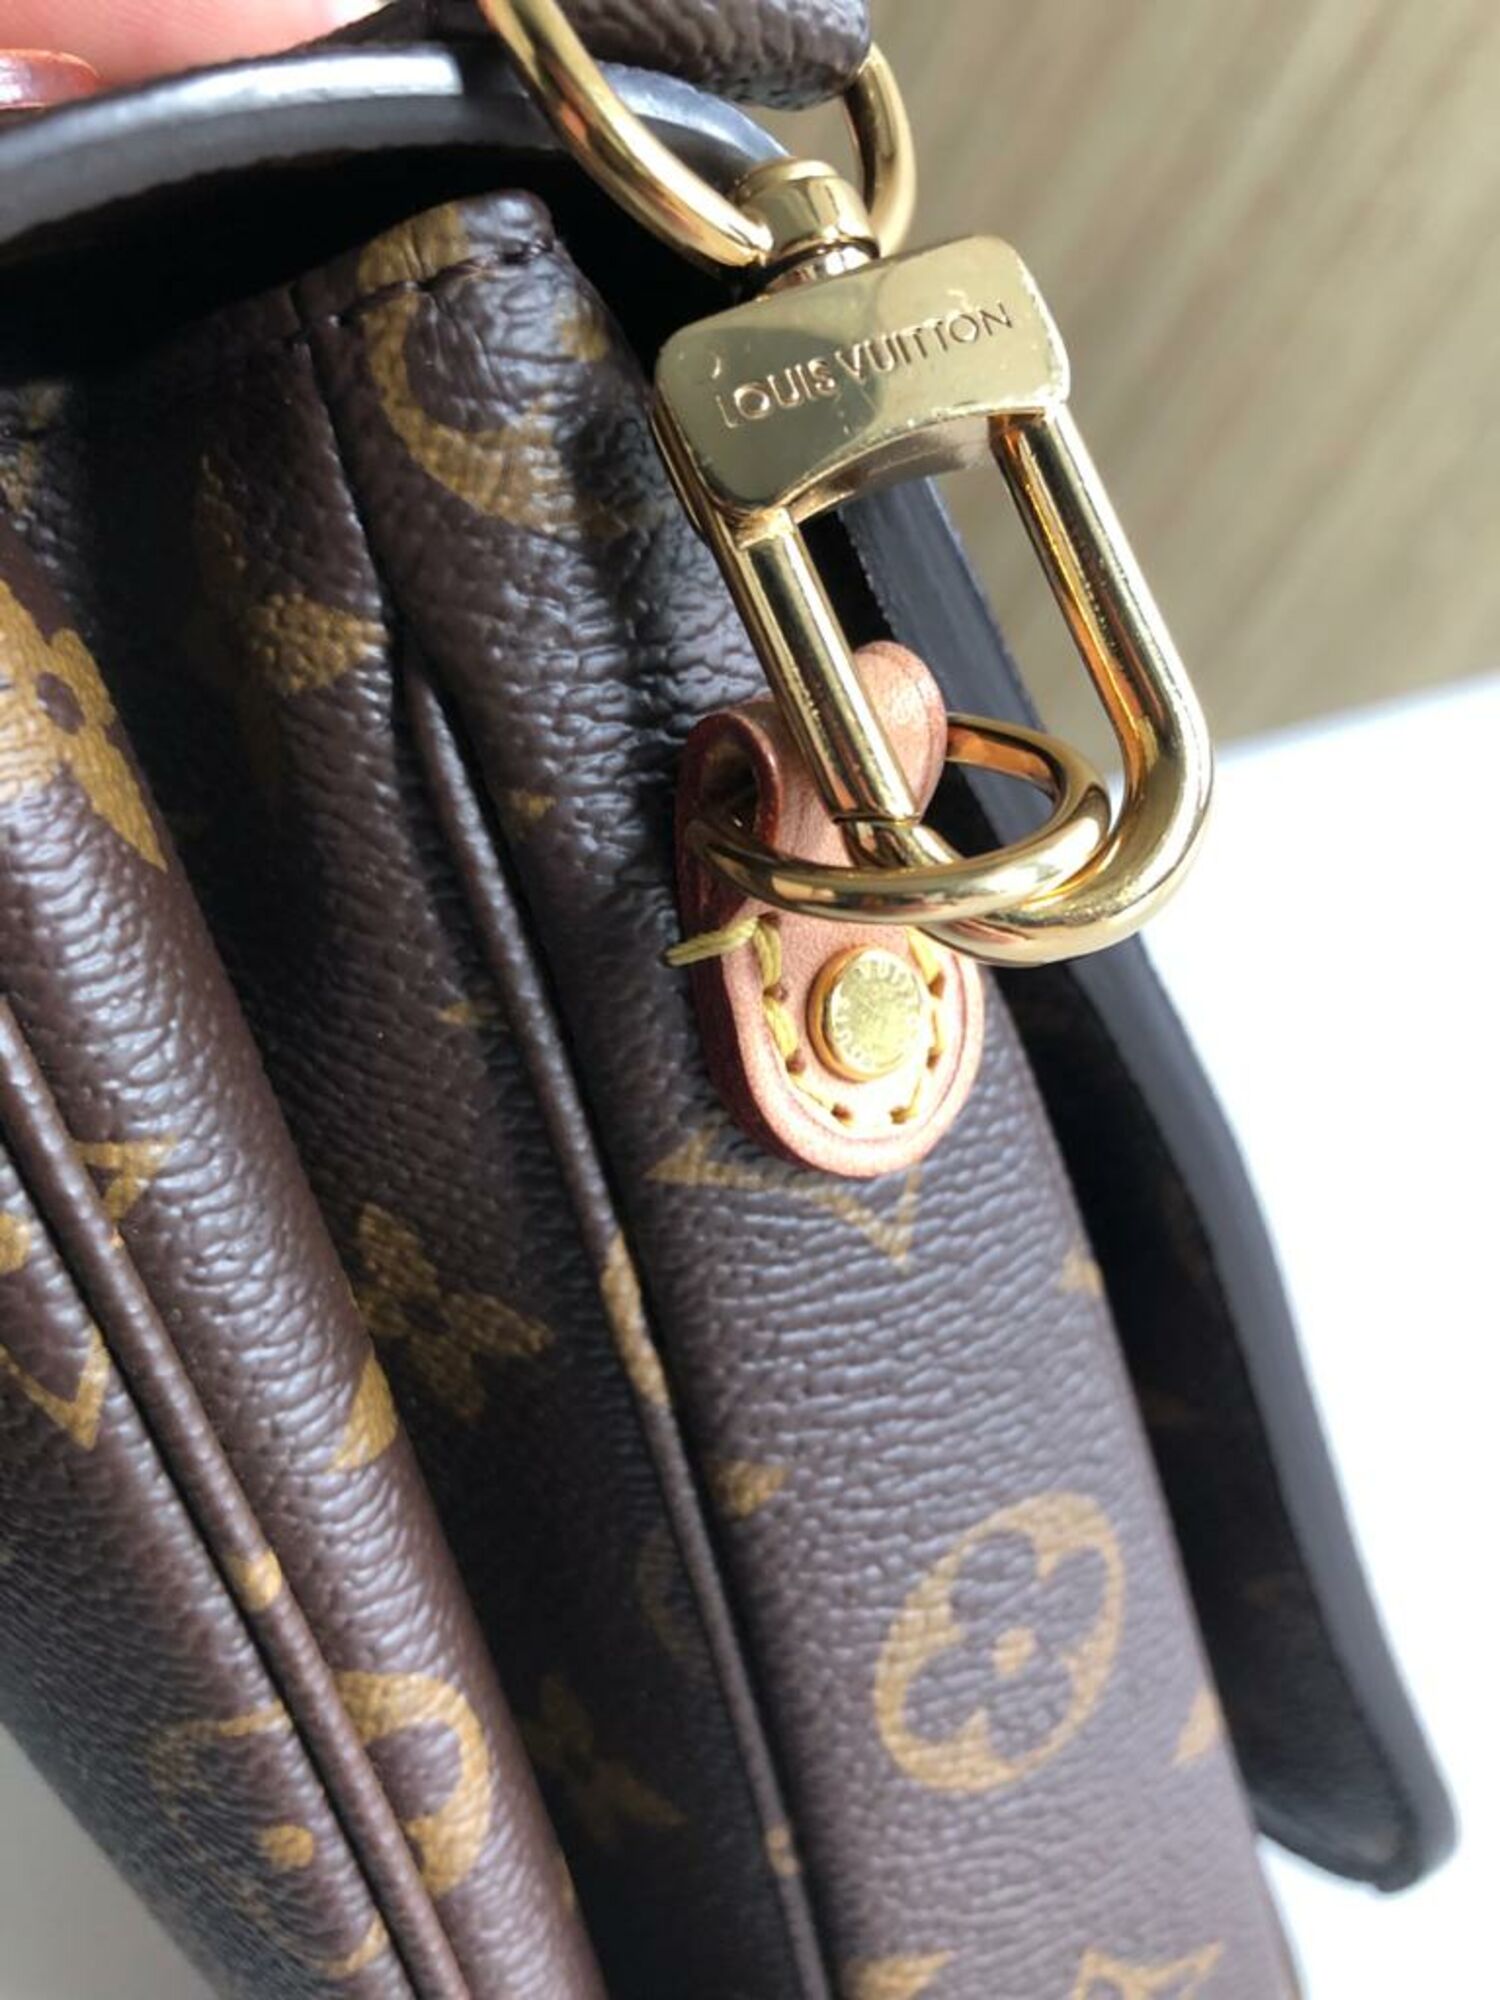 Louis Vuitton Pochette Metis Black . Receipt in hand Bag